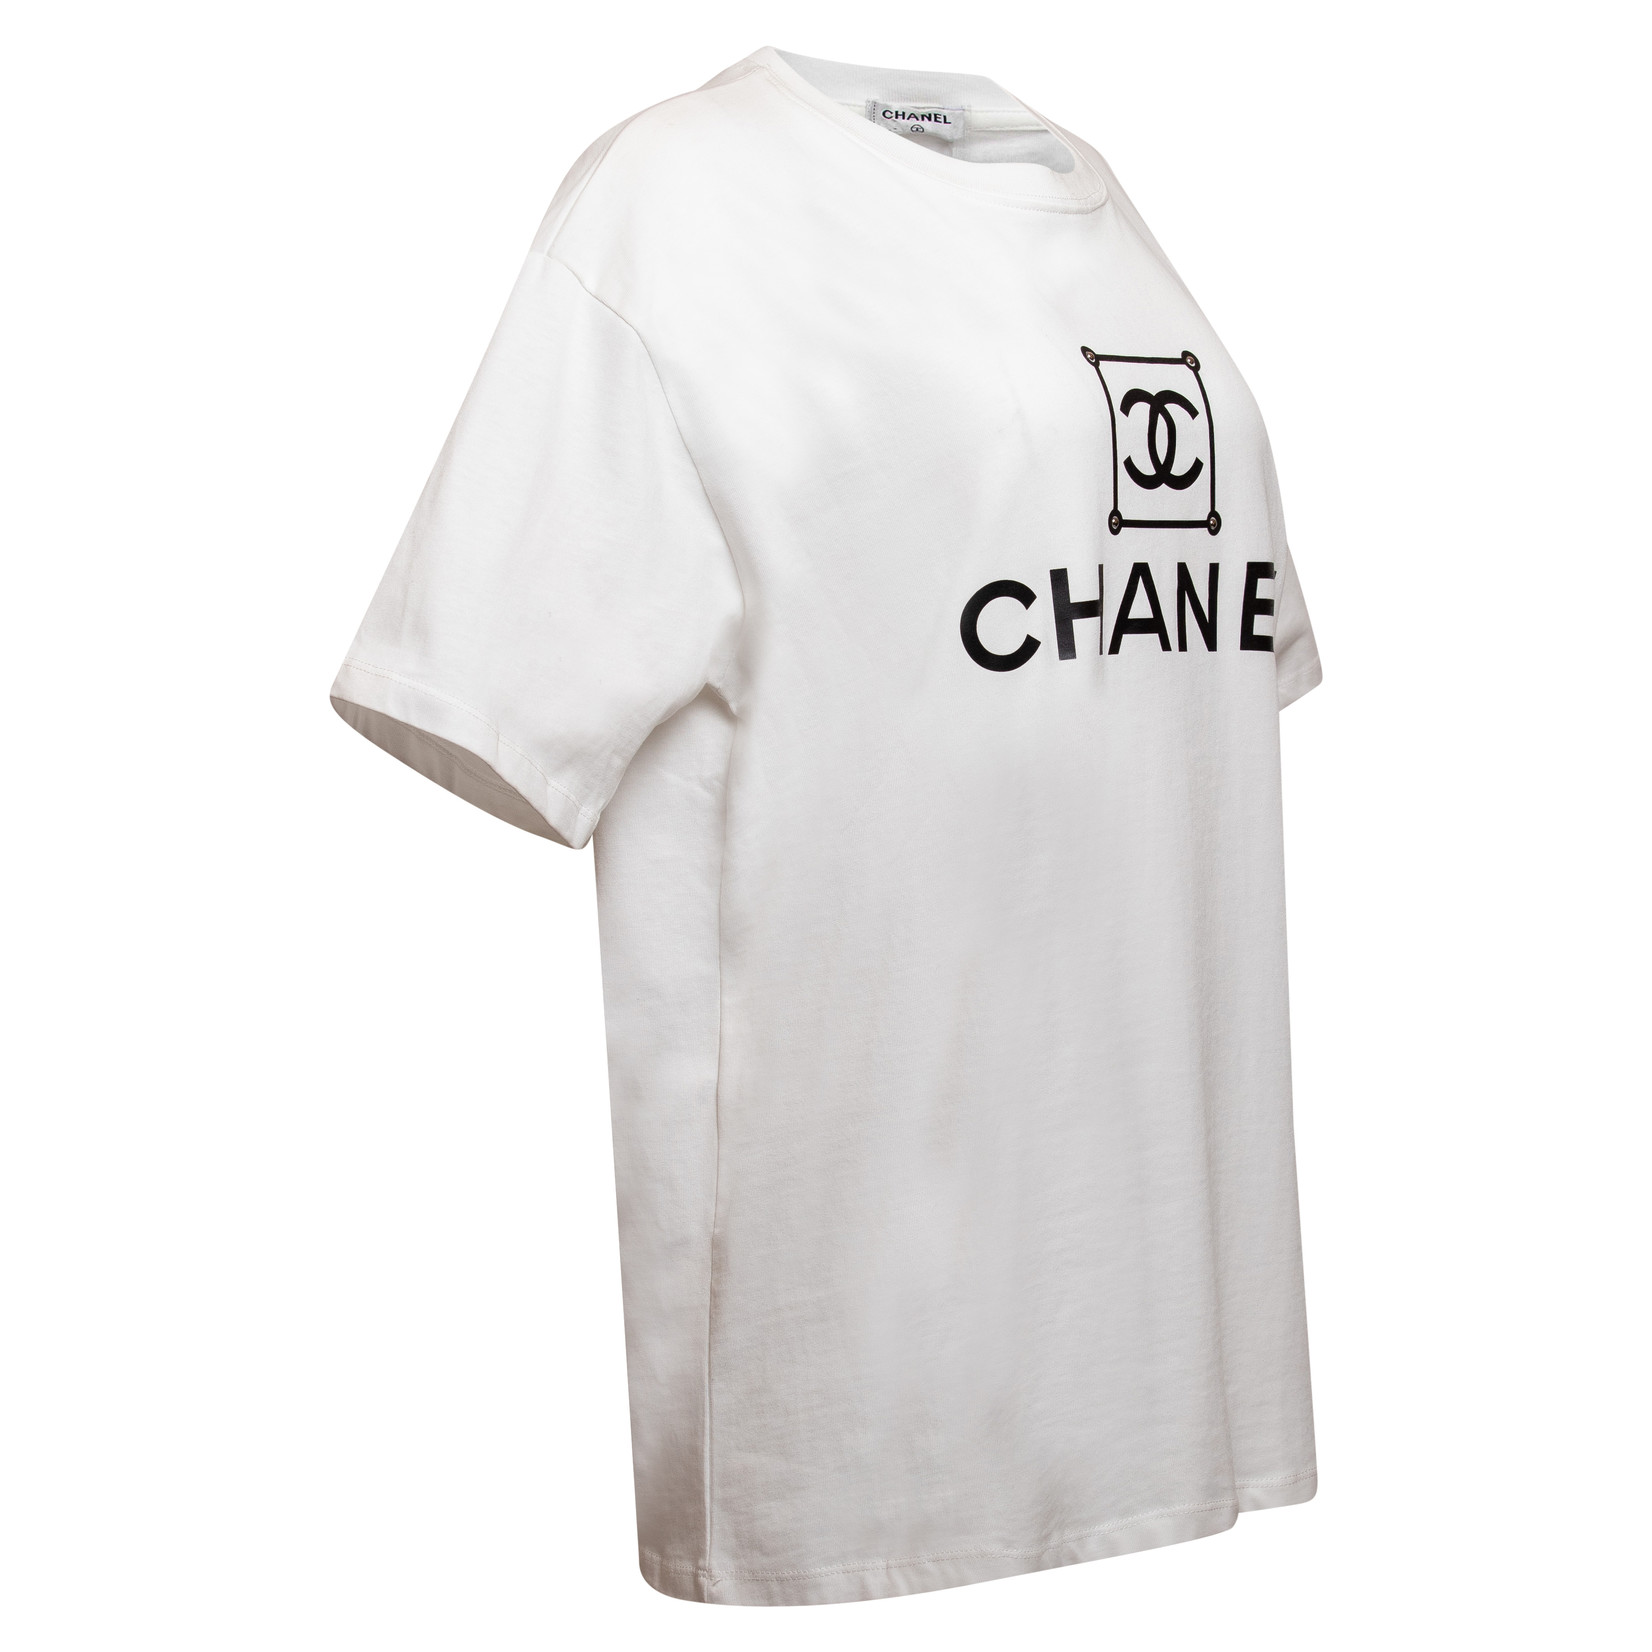 Chanel TShirts for Men  Mercari